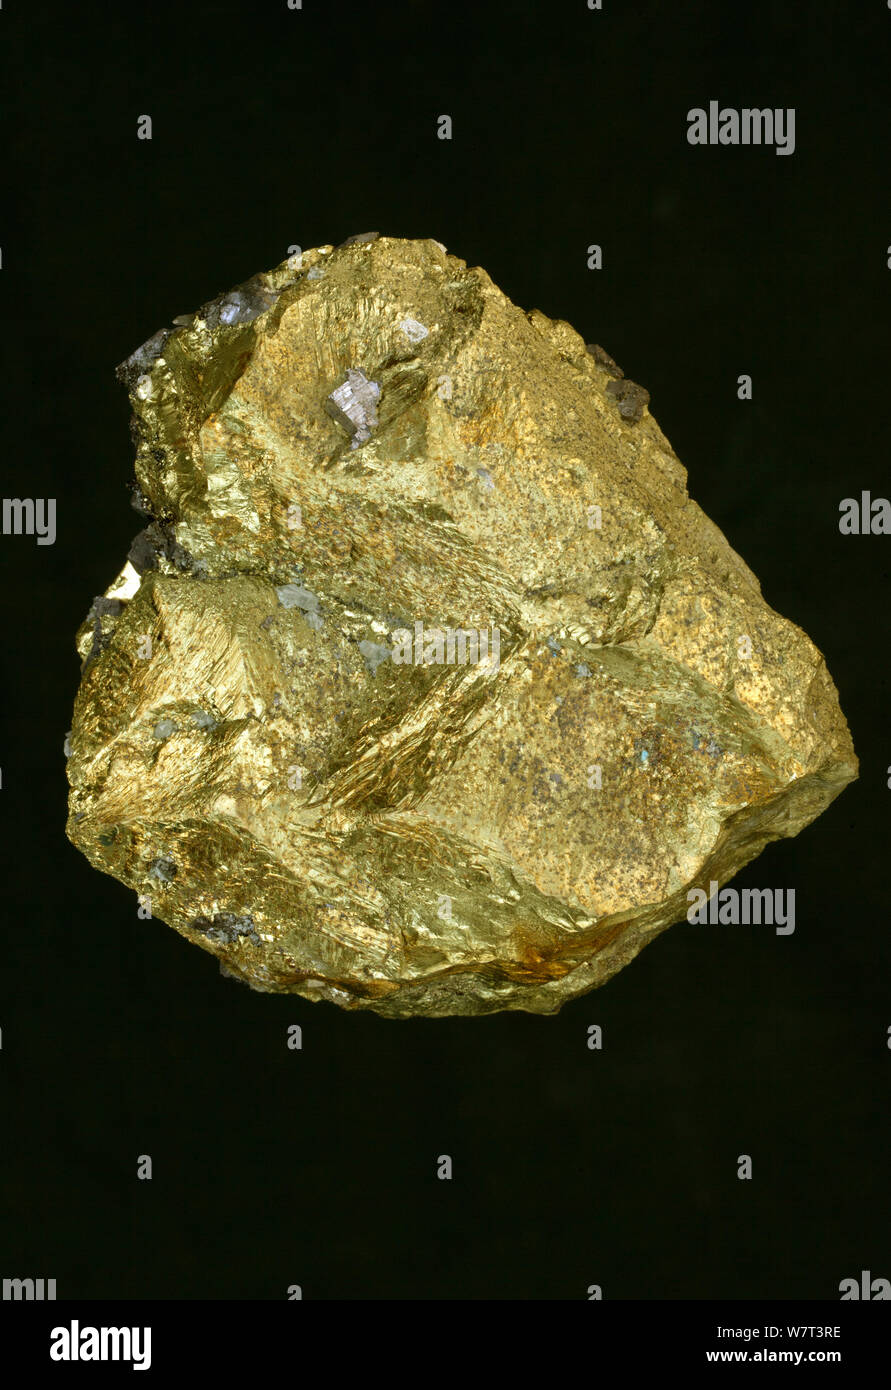 Kupferkies (CuFeS2) ein Mineral Erz aus Kupfer, von Madan, Bulgarien. Dies ist ein Kupfer Eisensulfid Mineral, das kristallisiert im Tetragonalen System. Stockfoto